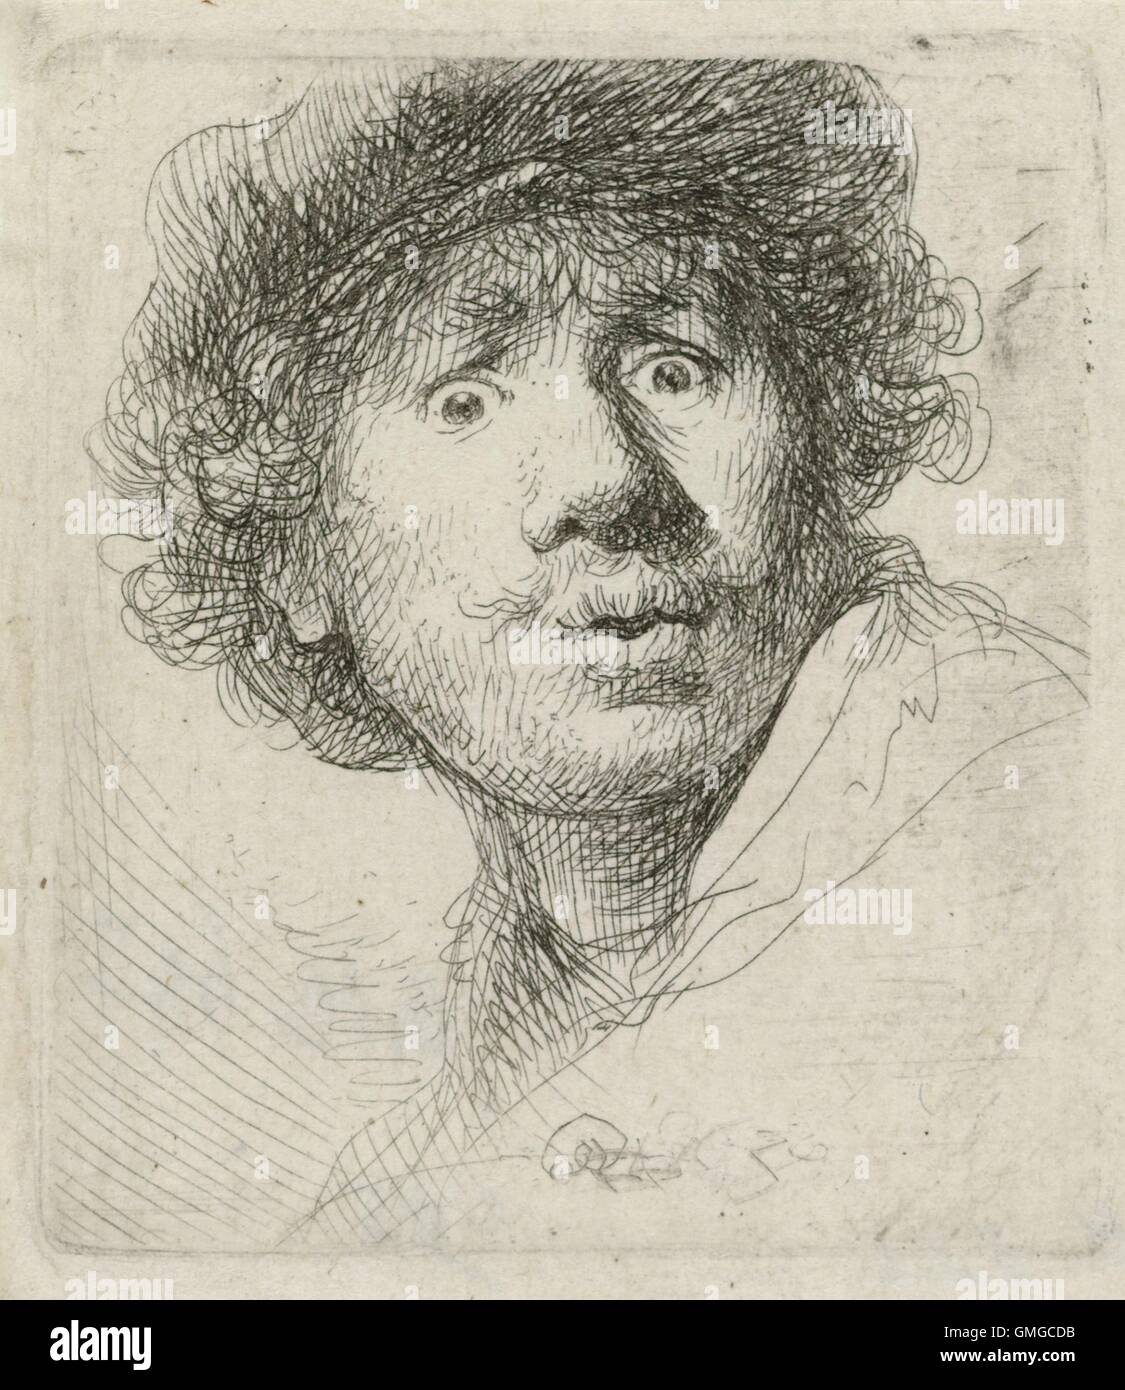 Autoritratto con berretto, da Rembrandt van Rijn, 1630, stampa olandese, incisione su carta. Rembrandt è stato 24 quando ha creato questo attacco (BSLOC 2016 3 25) Foto Stock